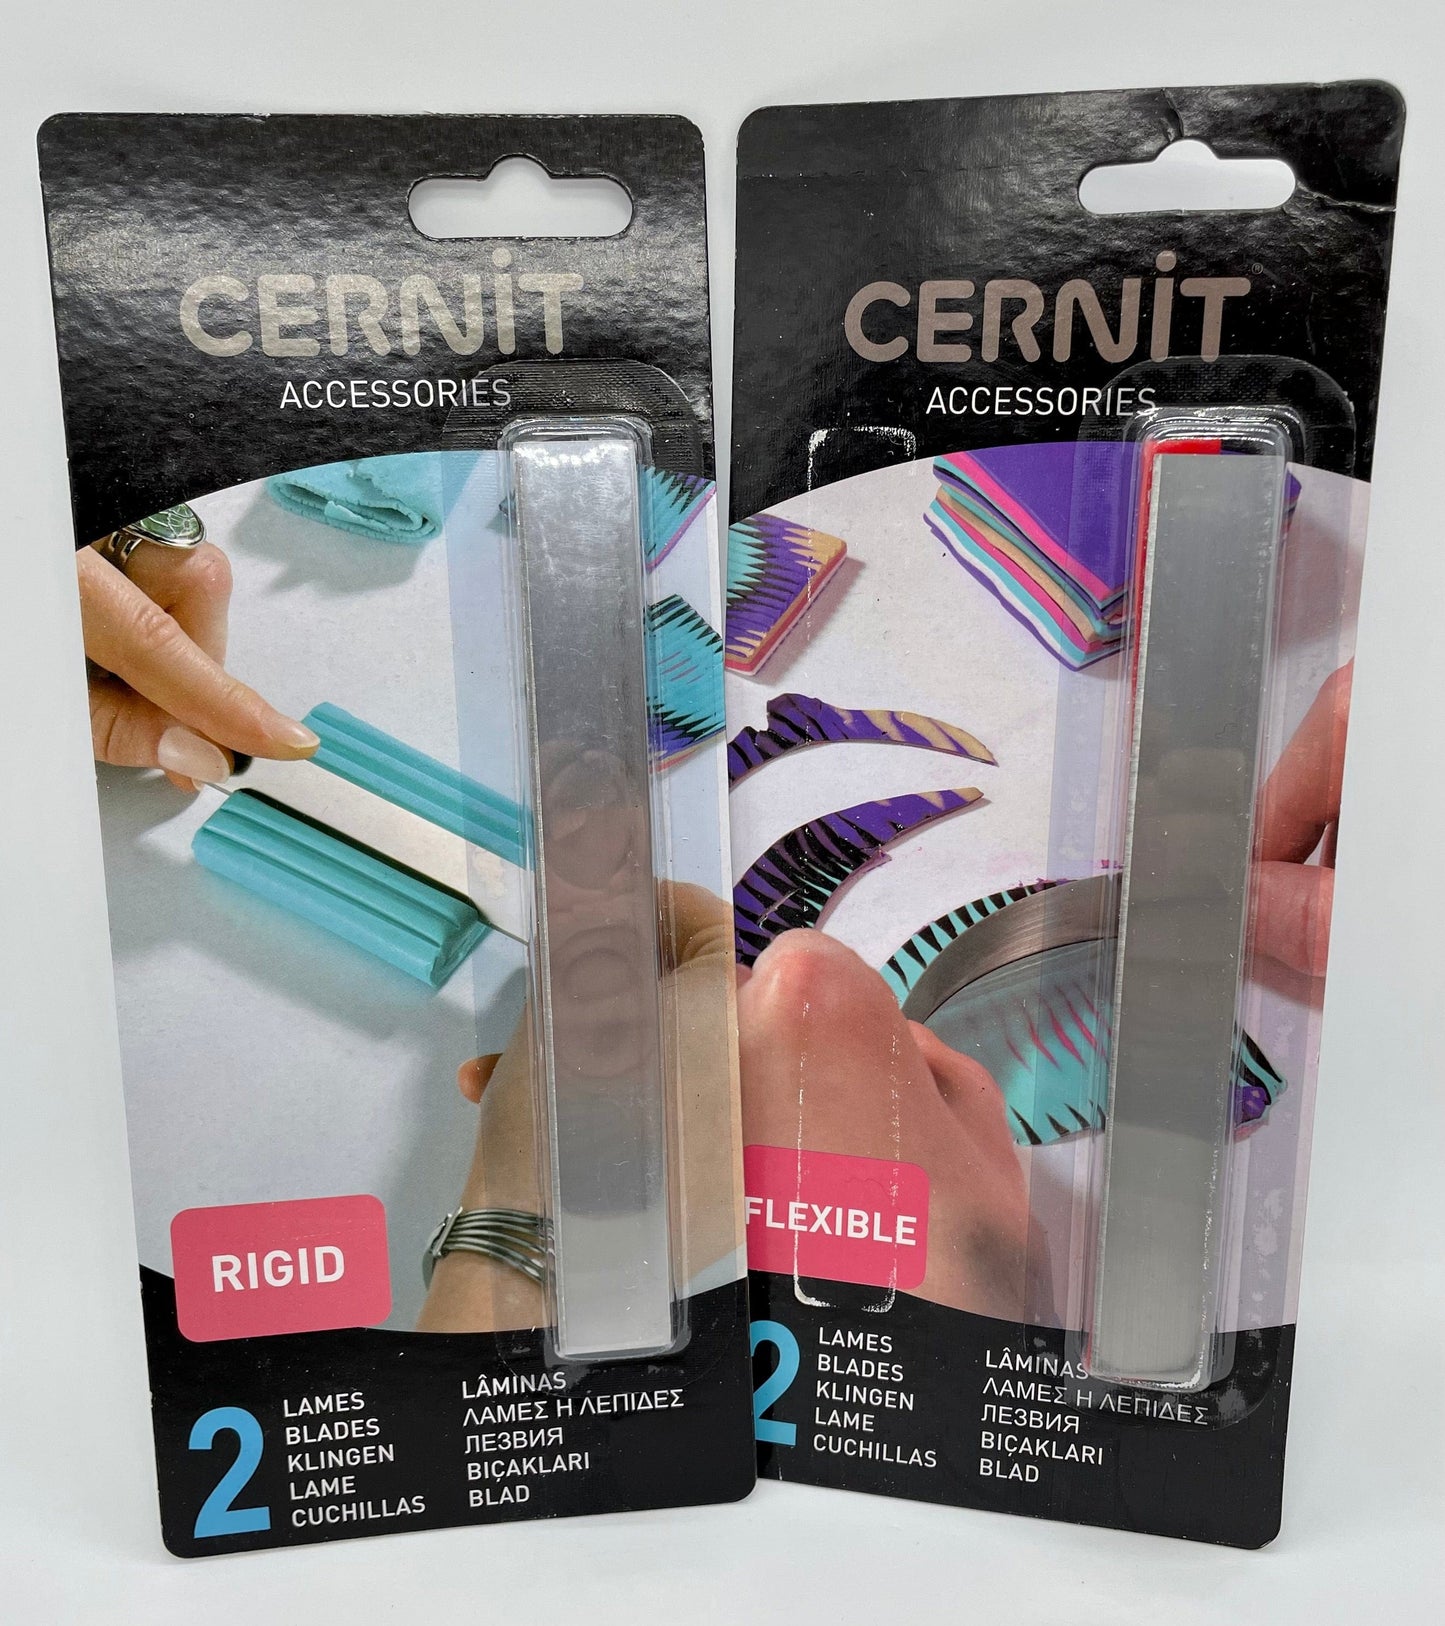 Cernit blade: Rigid or Flexible for polymer clay